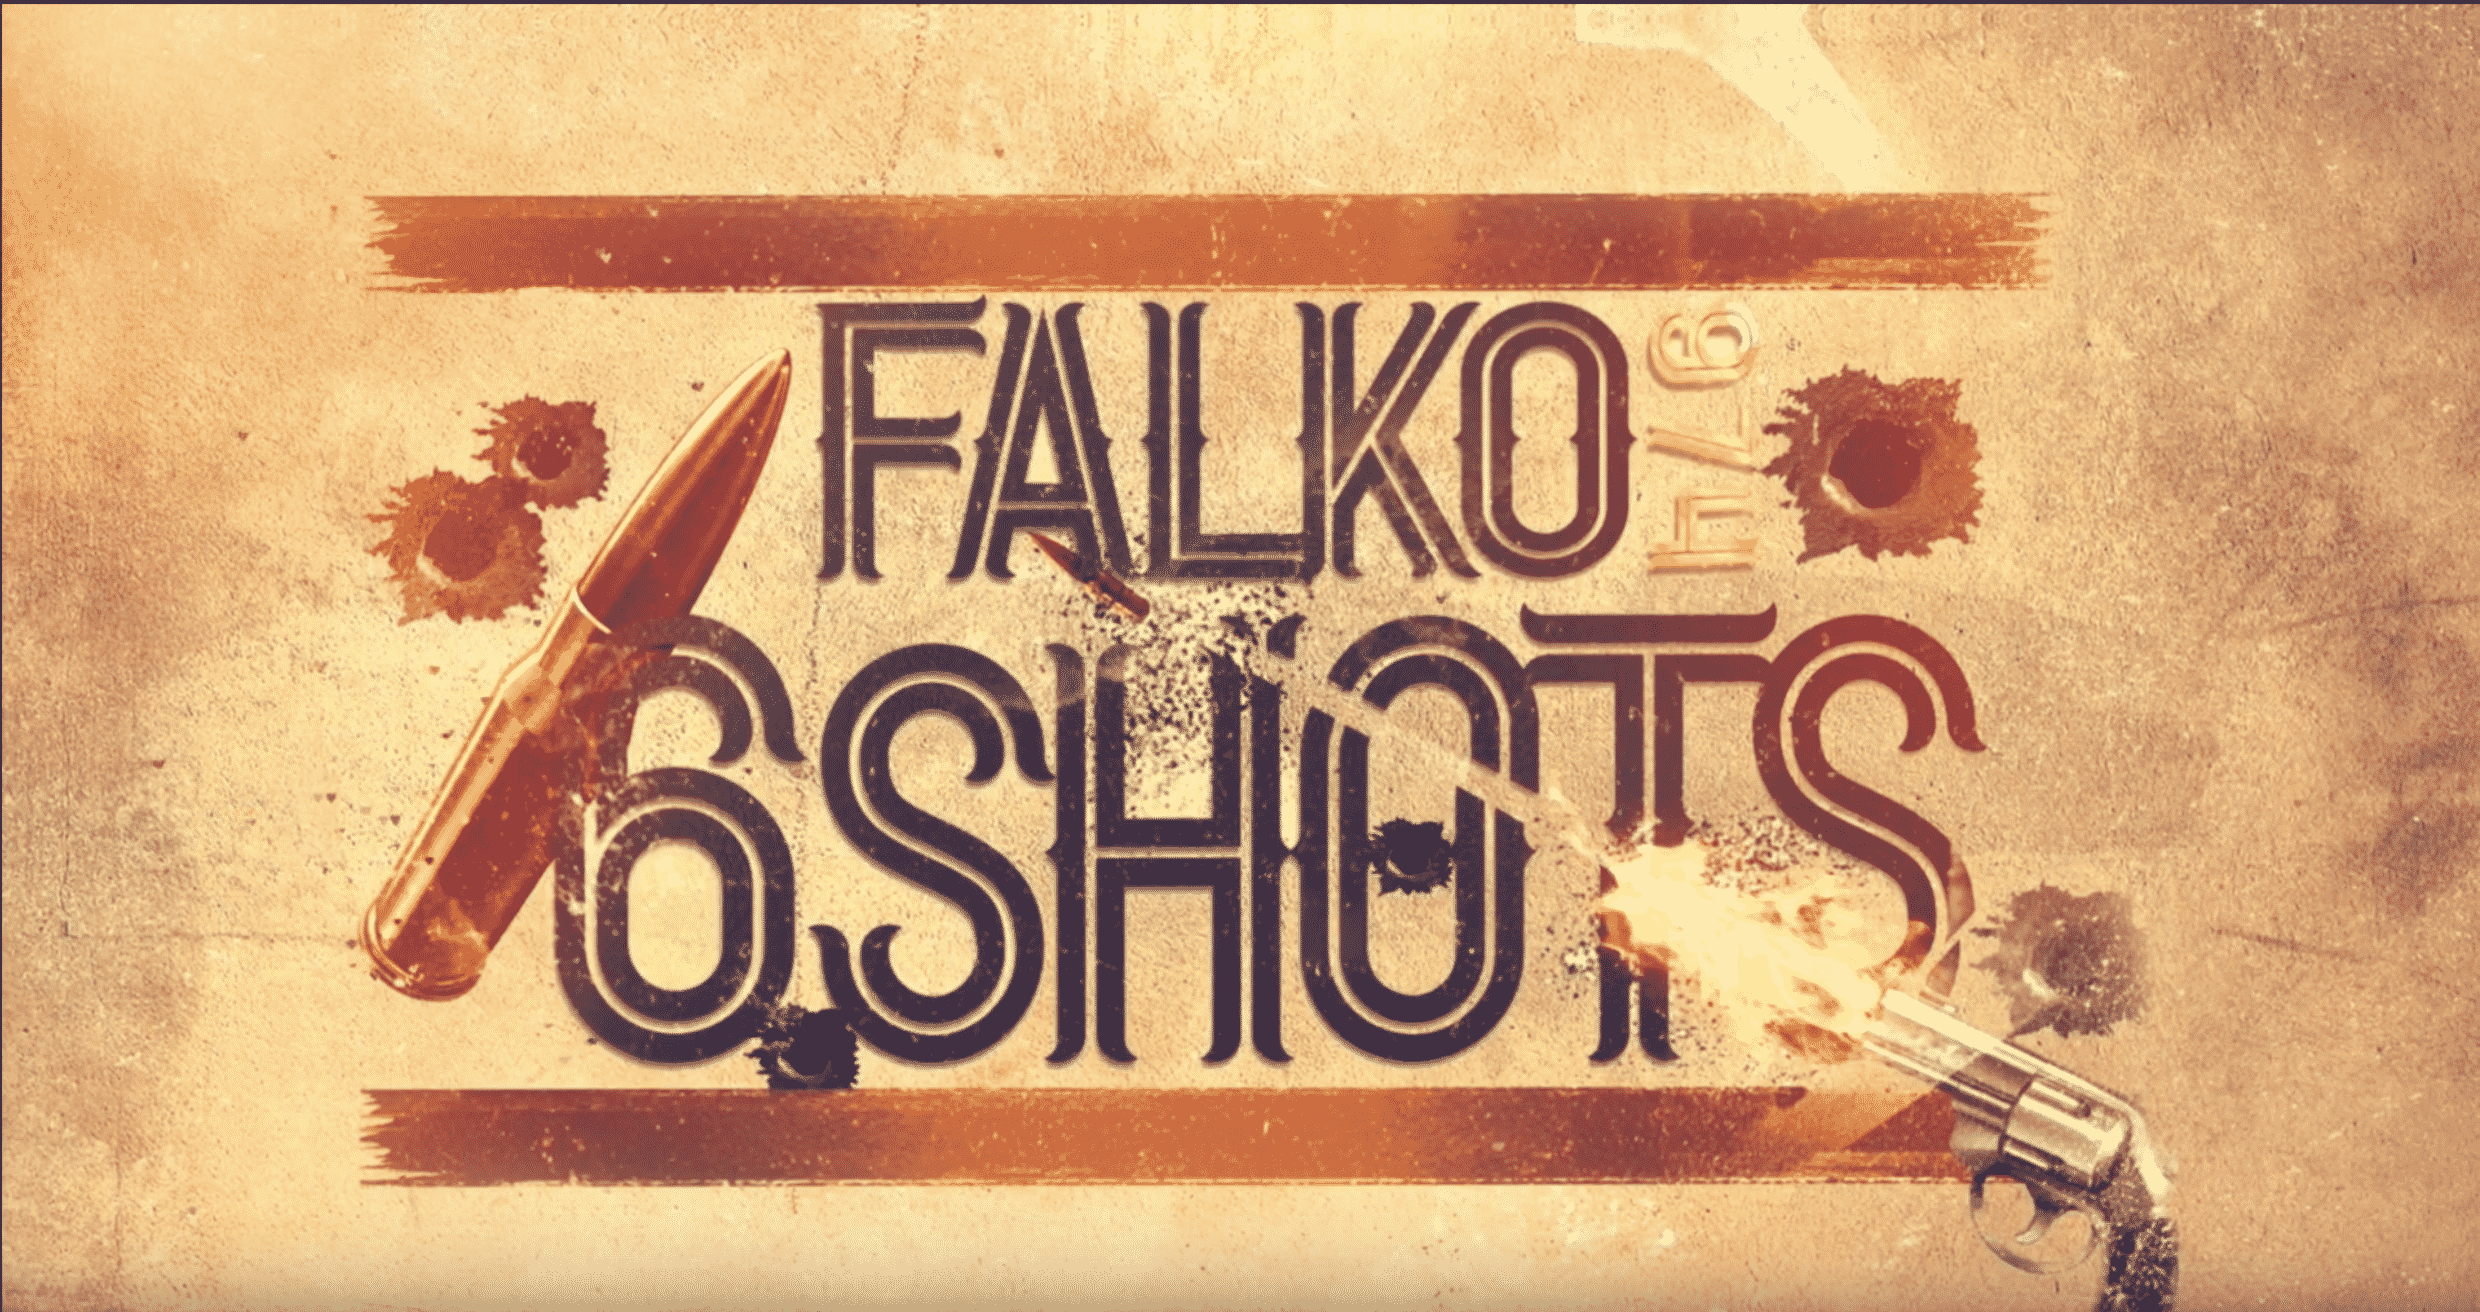 Falko dégaine ses armes sur "6shots"